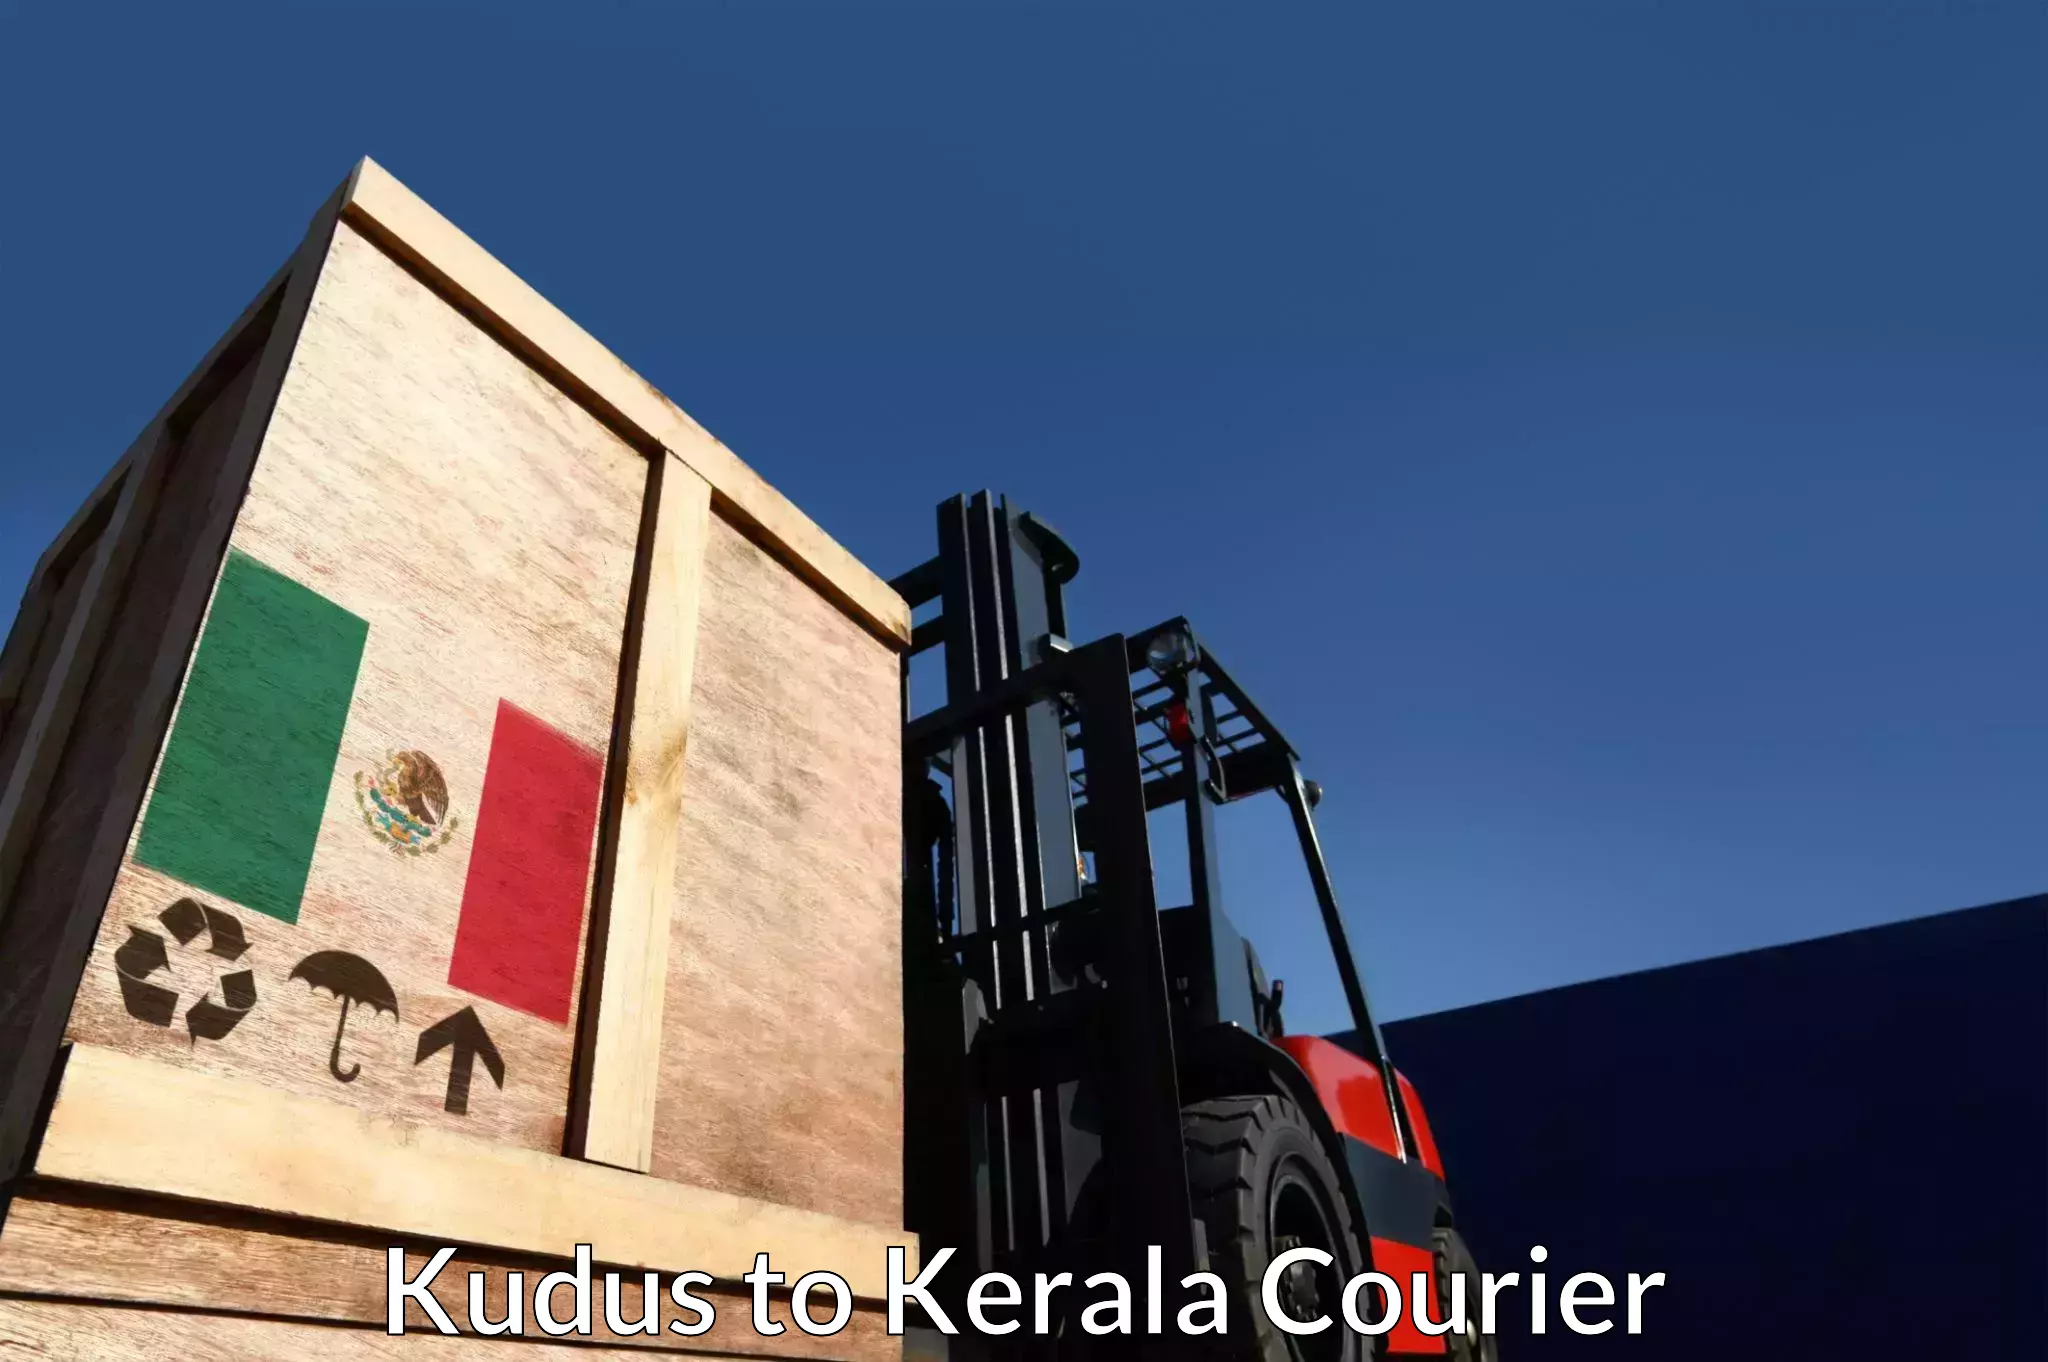 Express delivery network Kudus to Thiruvananthapuram